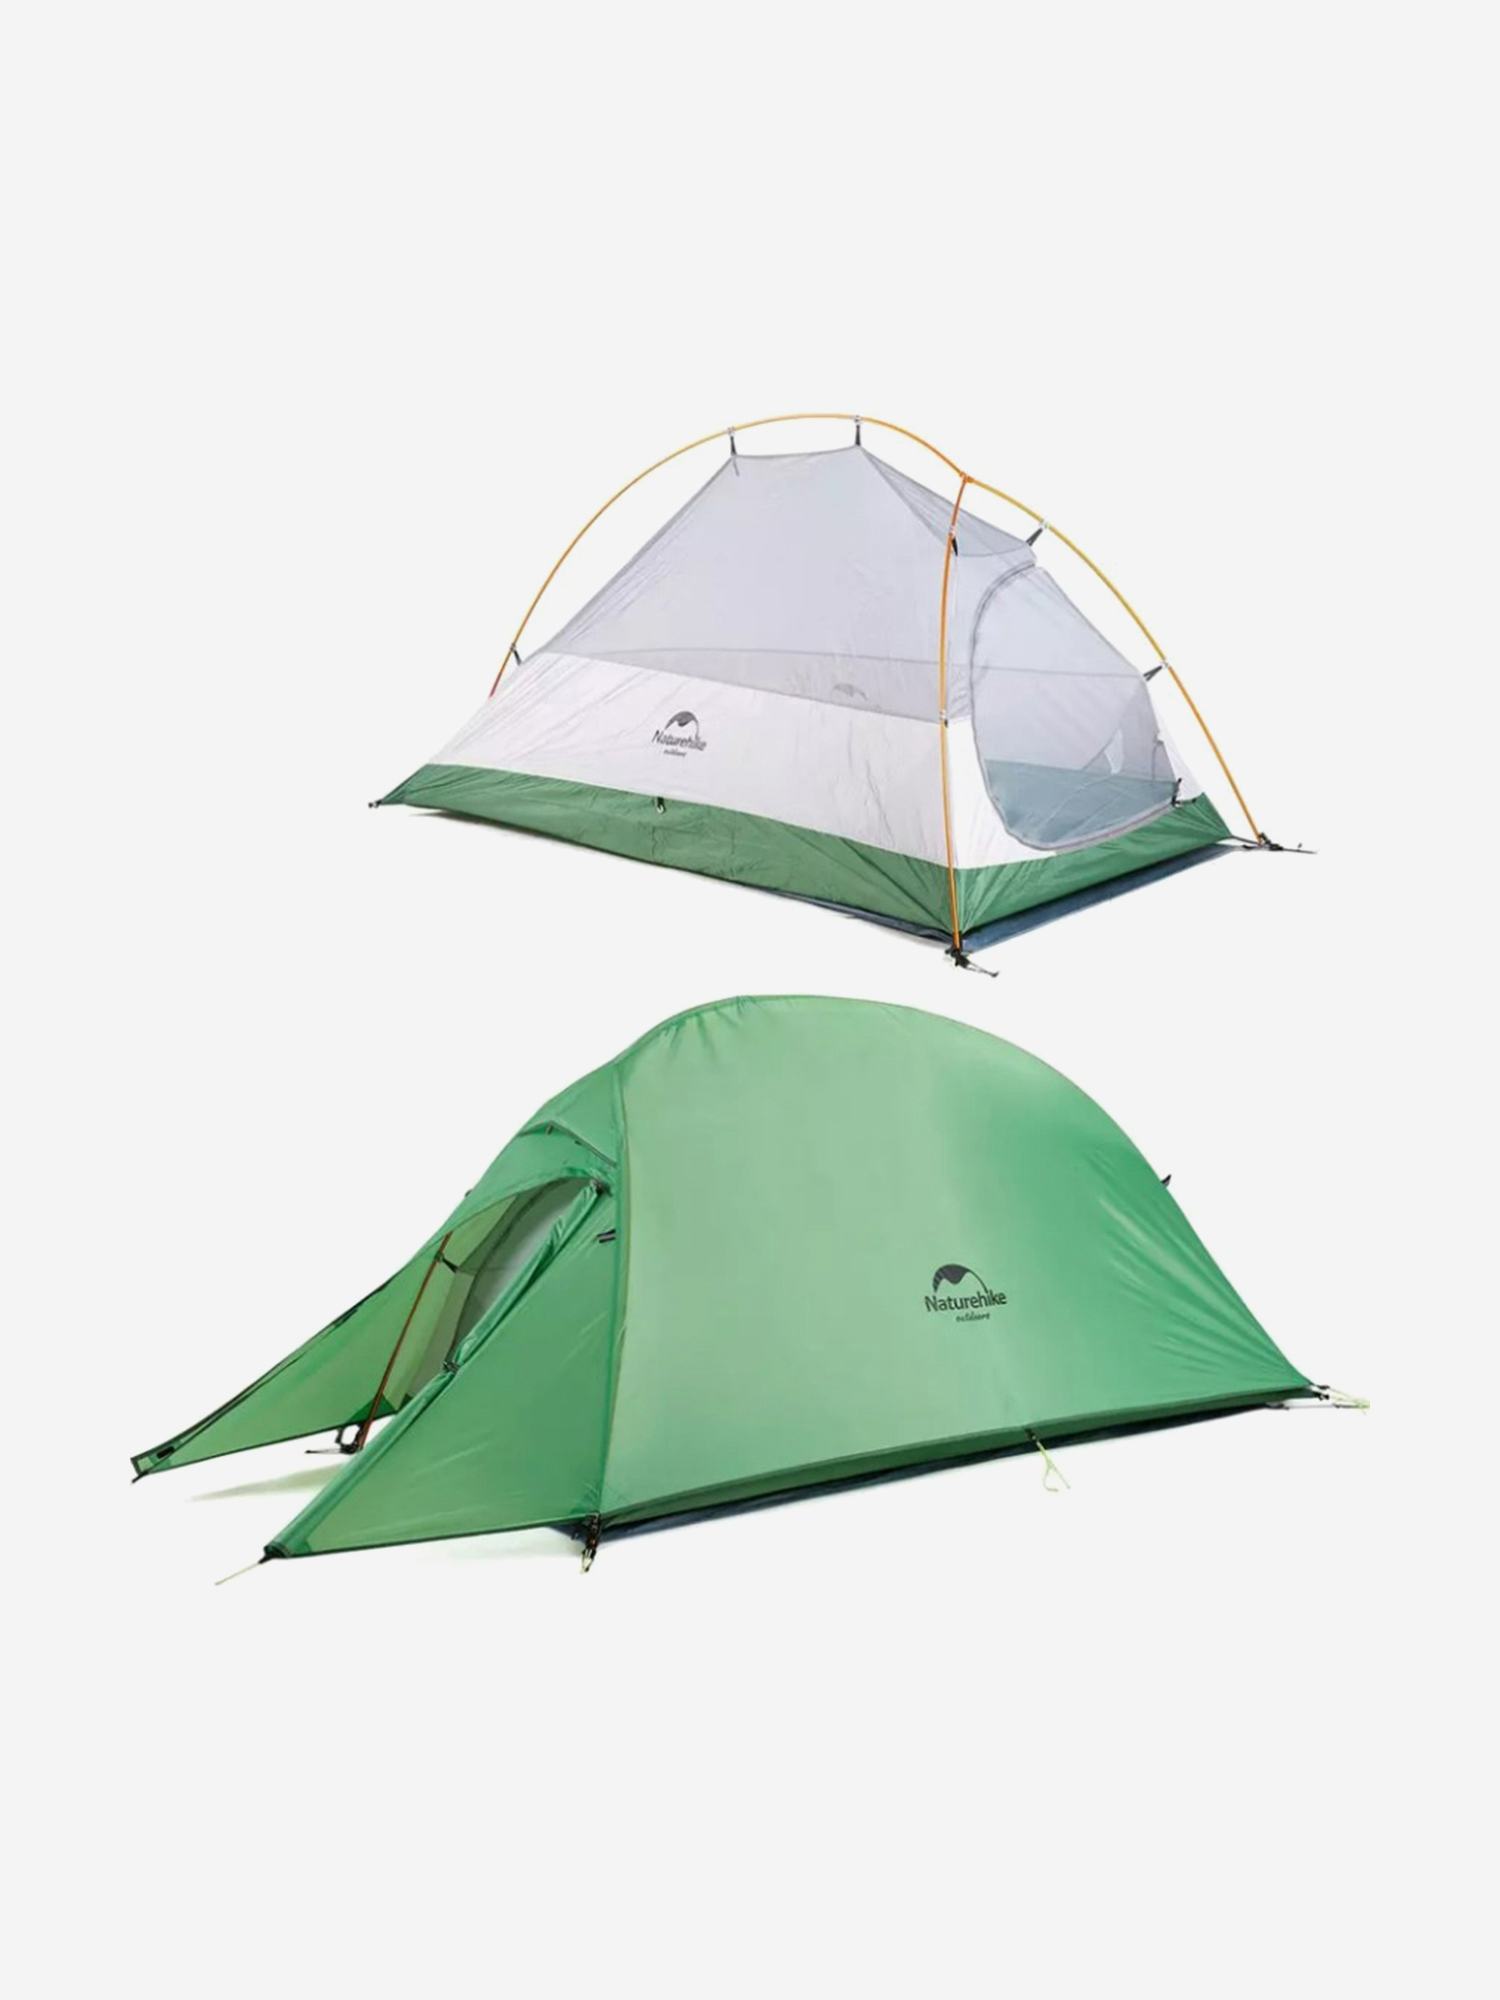 Палатка Naturehike Cloud Up 1-местная, алюминиевый каркас, сверхлегкая, зеленый, Зеленый палатка naturehike star river si 2 местная алюминиевый каркас сверхлегкая оранжевая оранжевый